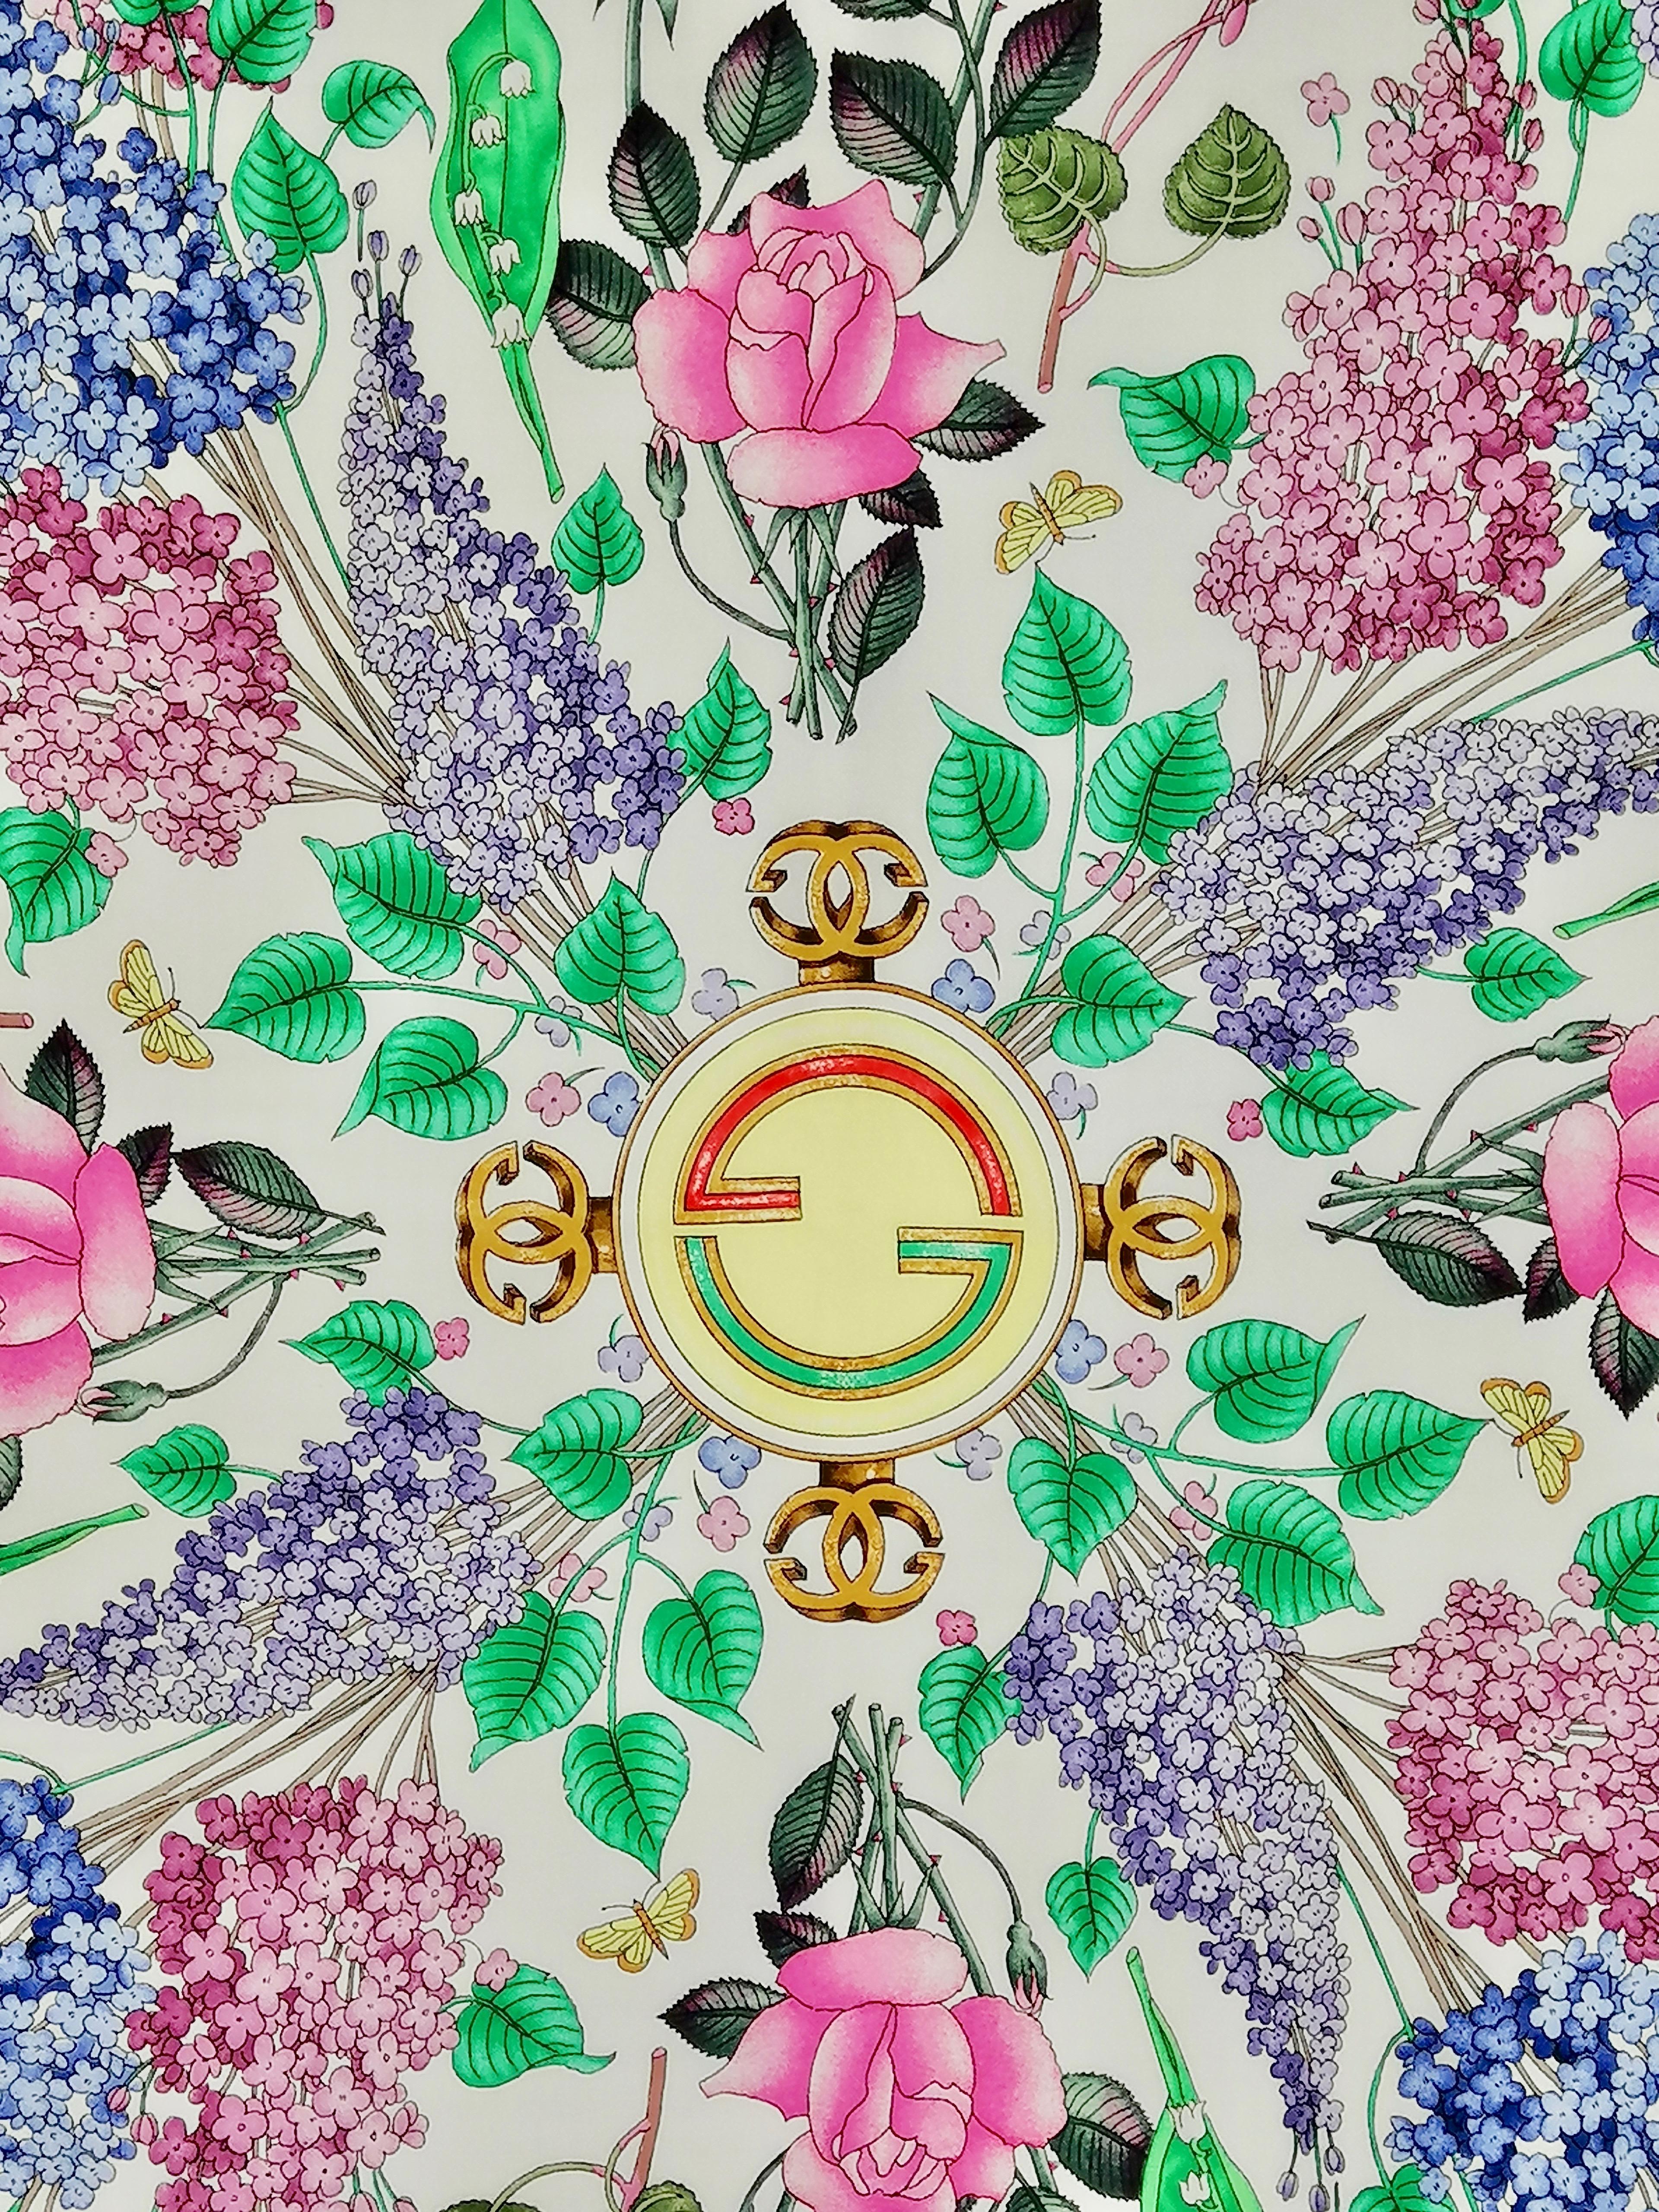 Gucci Seidenschal
Entworfen von Vittorio Accornero - 70er Jahre
Handgerollter Saum
cm. 88 x 88 ca.
Ausgezeichneter Zustand
Blumenthema mit Flieder, Rosen, Maiglöckchen und Alpenveilchen, die sich vor einem weißen Hintergrund abheben. Himmelblauer